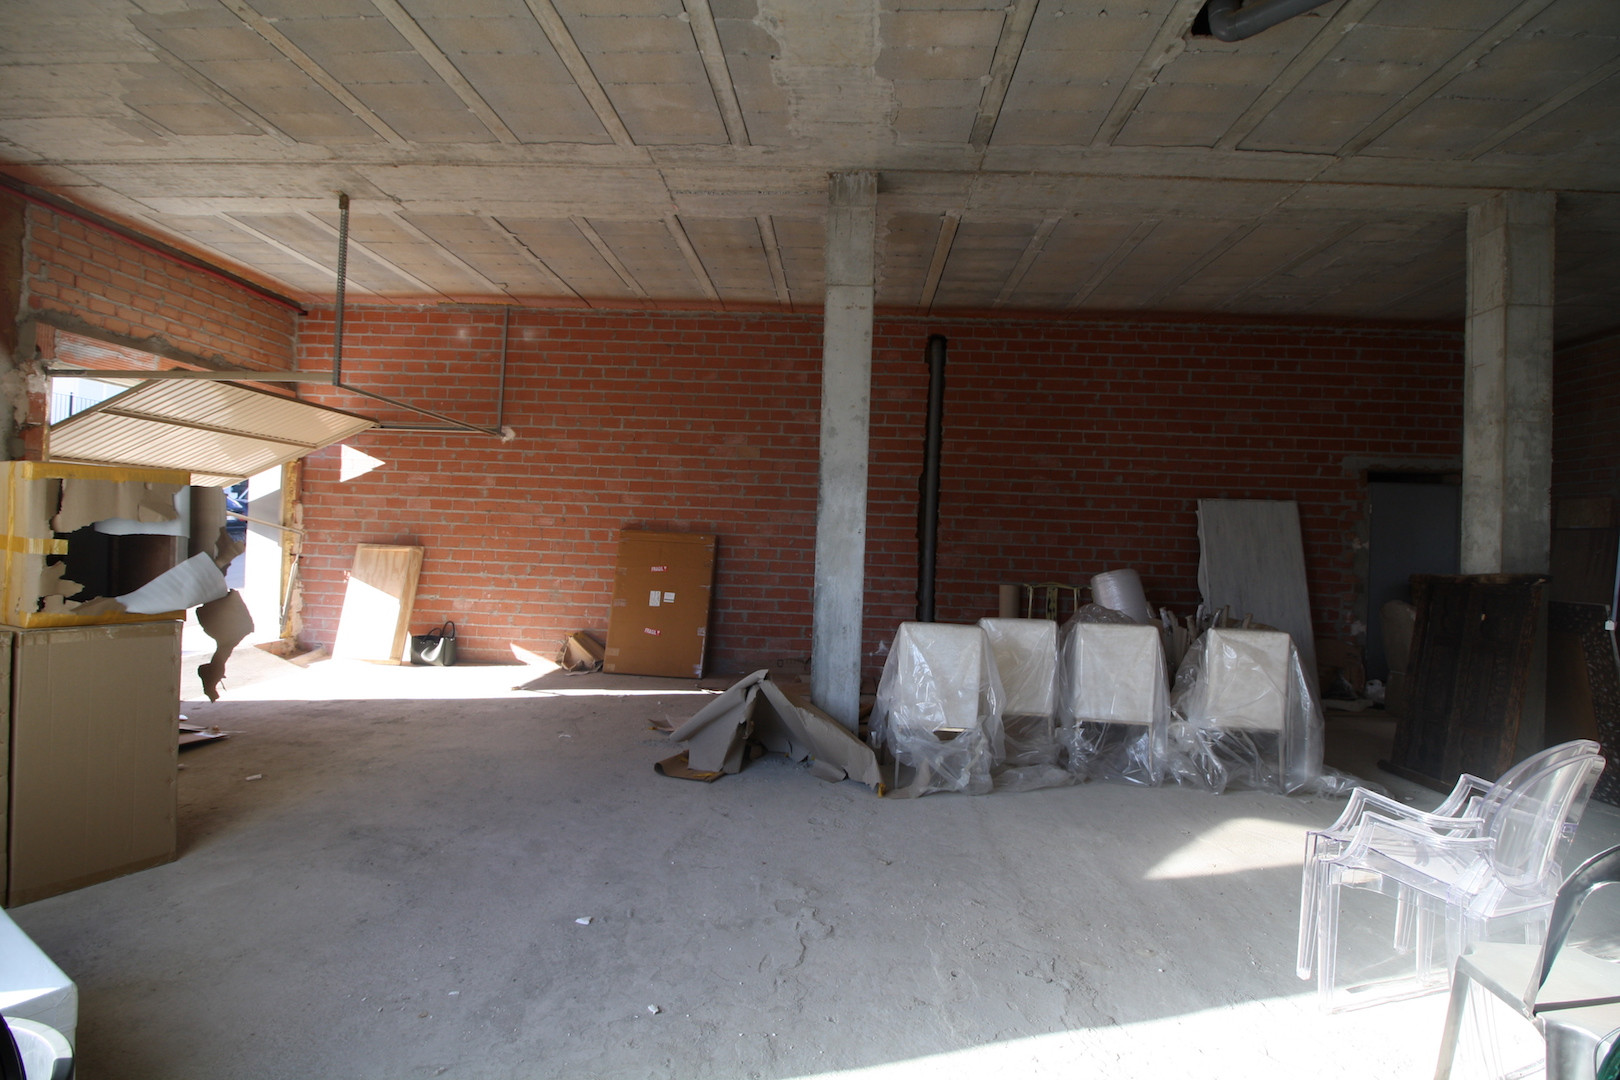 Exterior Local Comercial en venta en Pueblo Nuevo de Guadiaro